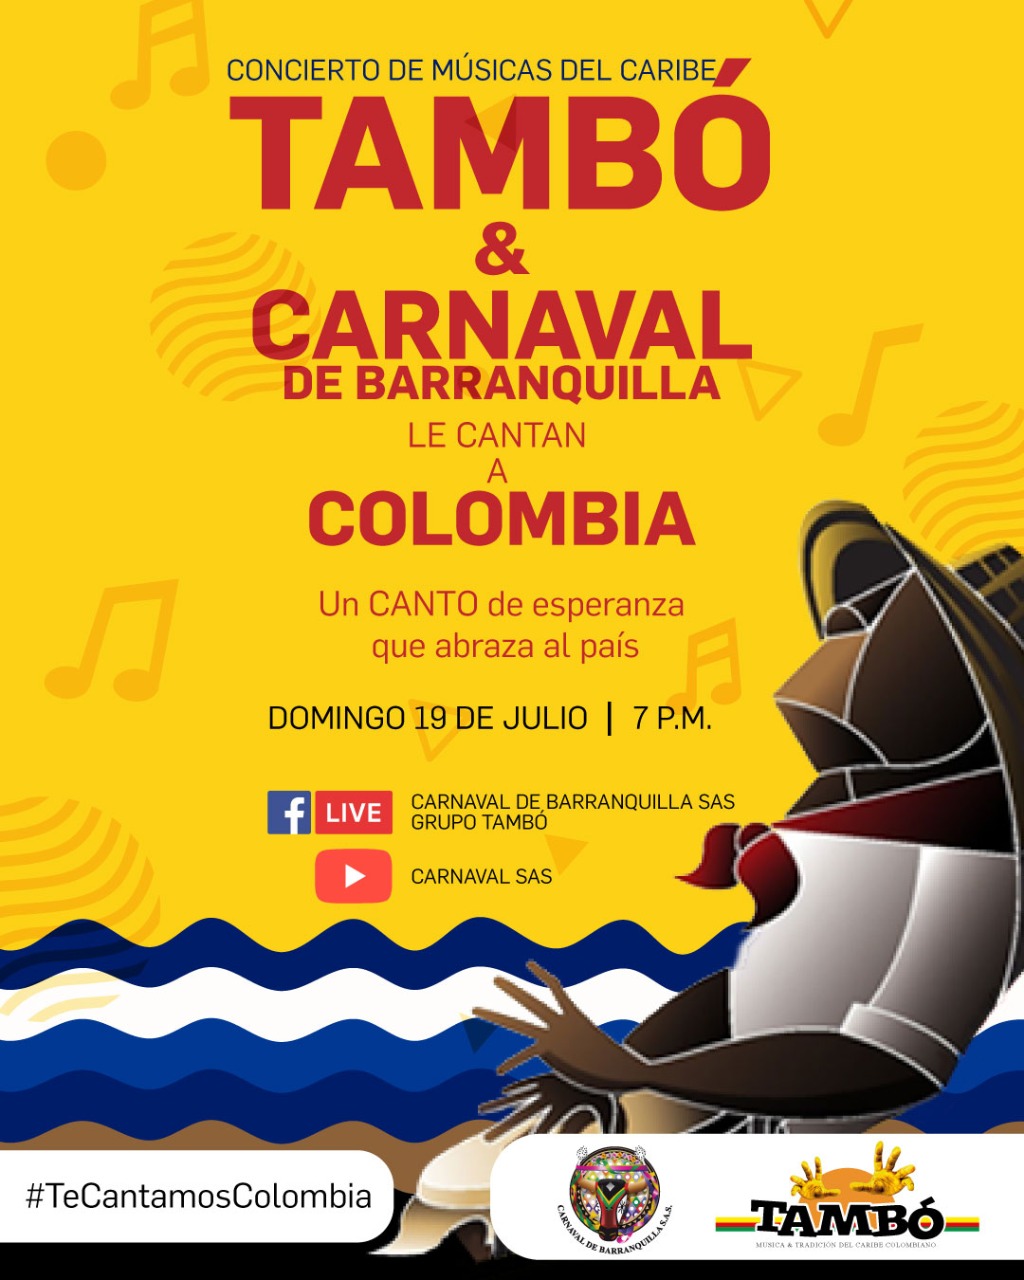 Tambó y Carnaval de Barranquilla le cantan a Colombia